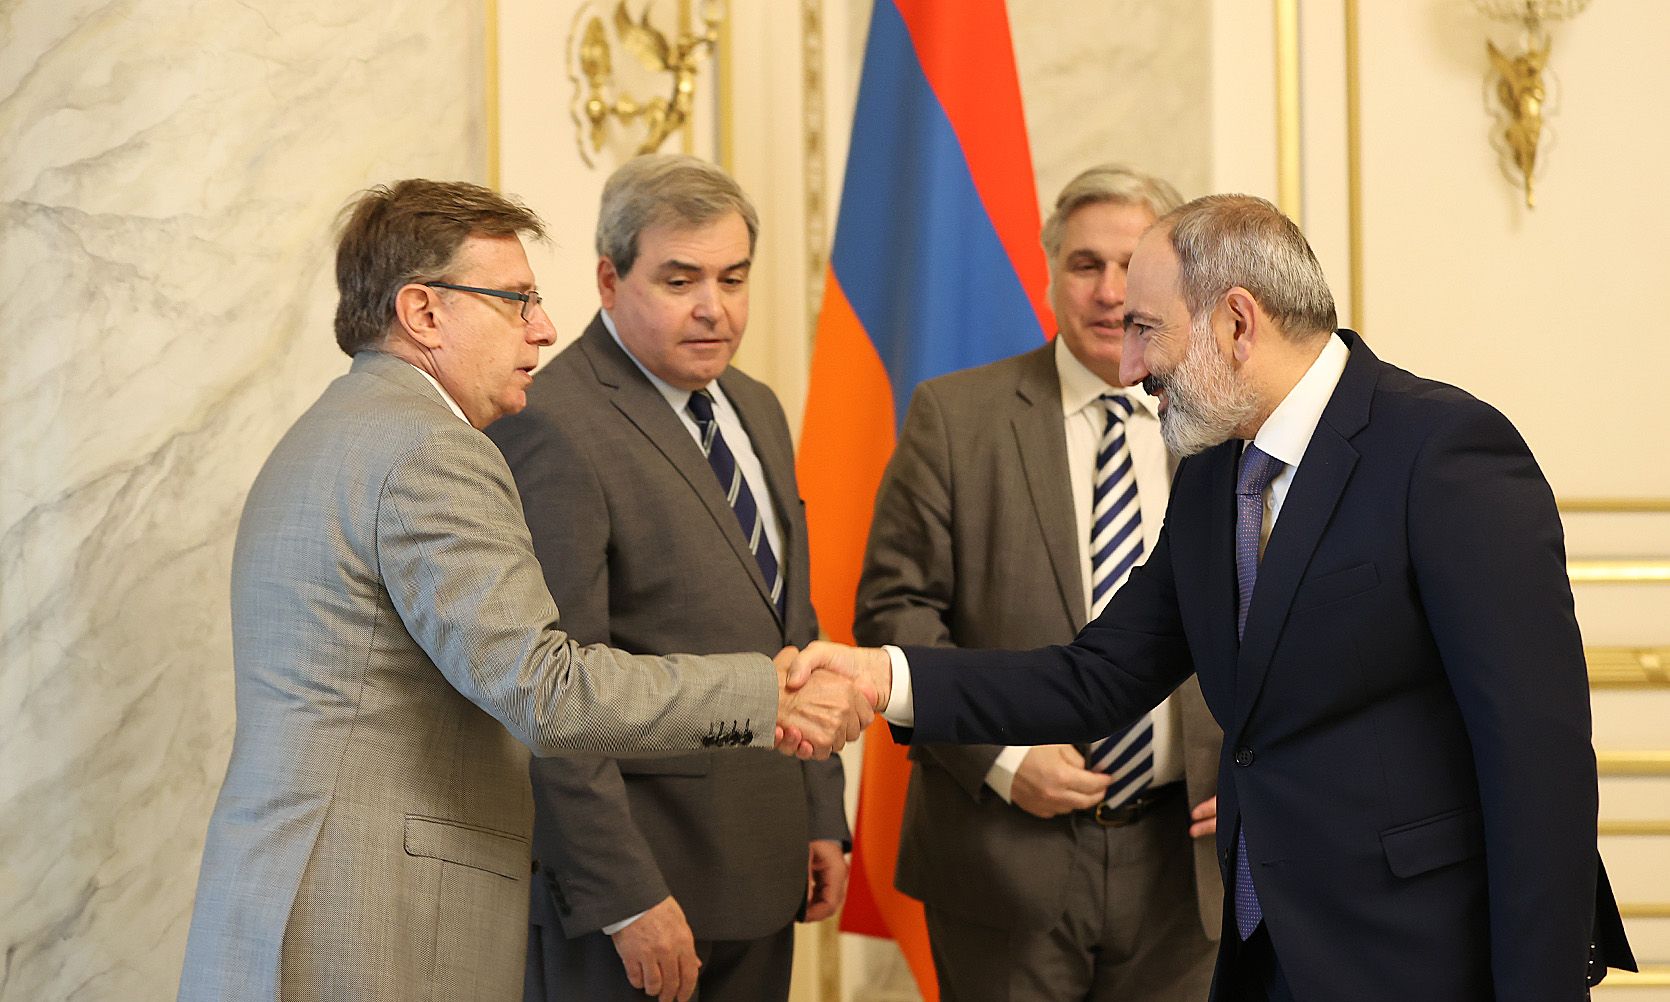 Հայաստանը կարևորում է Երևանում դեսպանատուն բացելու Ուրուգվայի որոշումը. վարչապետն ընդունել է Ուրուգվայի արտաքին գործերի նախարարին